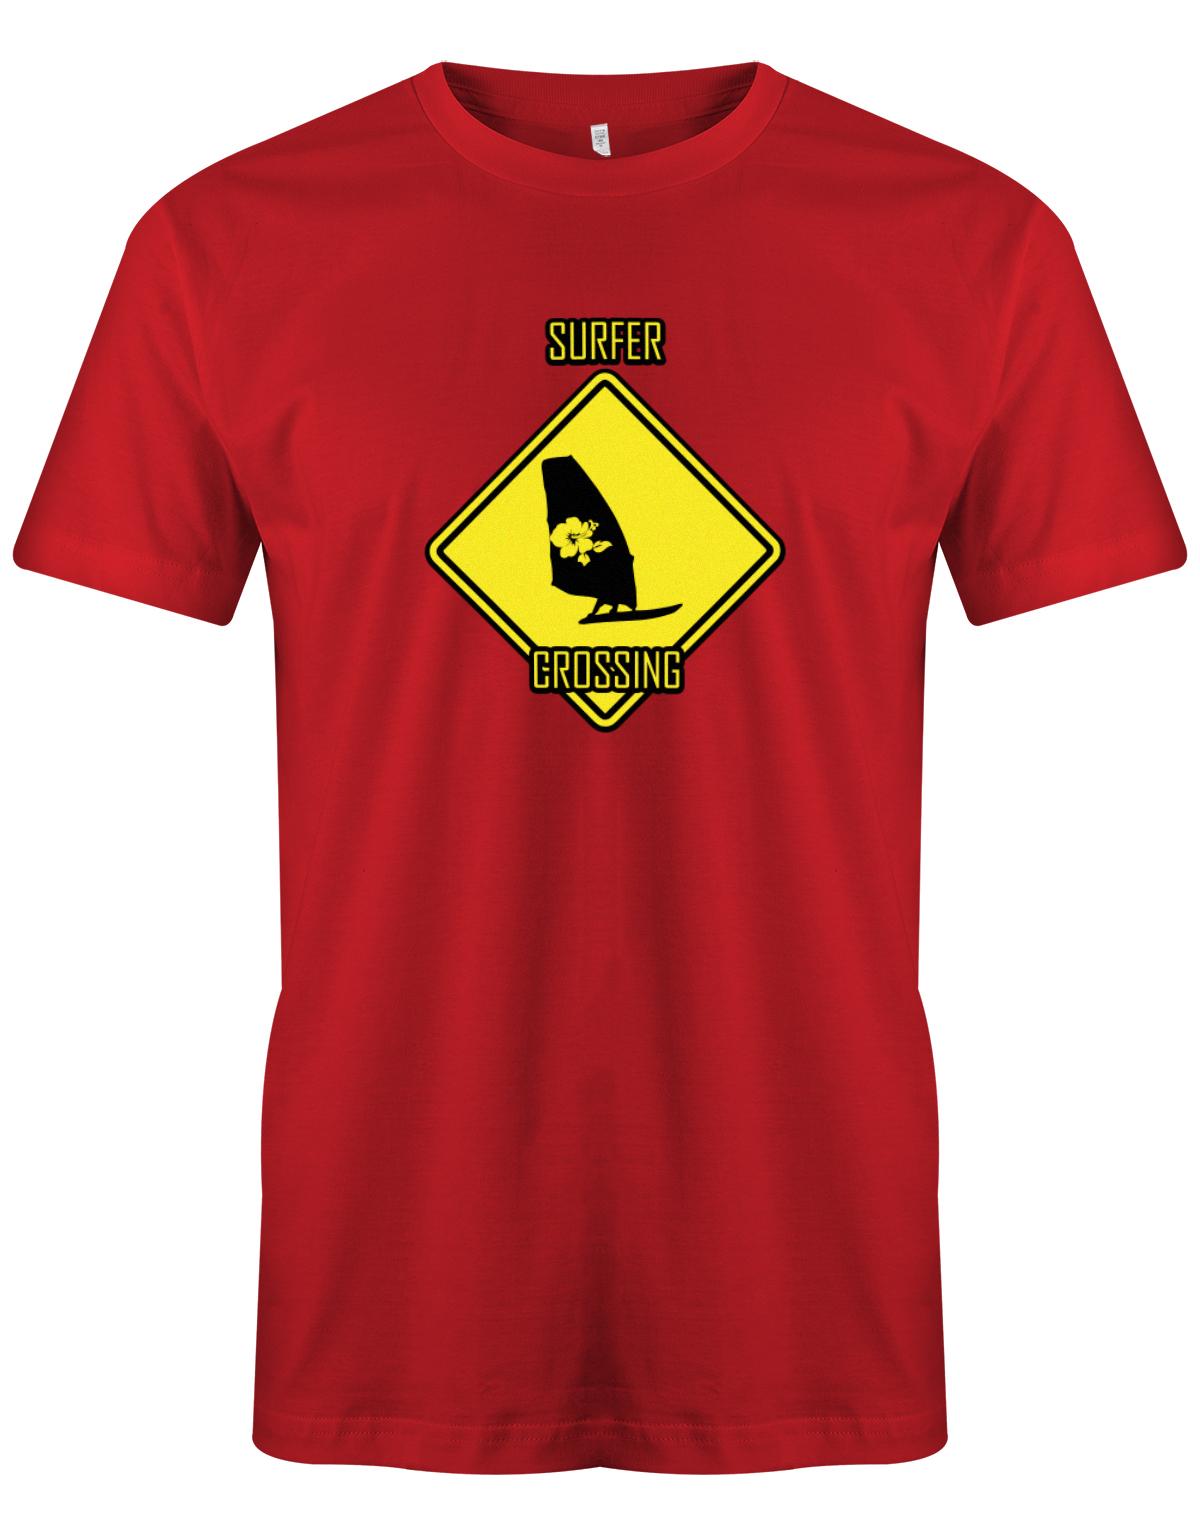 Surfer t-shirt bedruckt mit Achtung Surfer Crossing  Rot